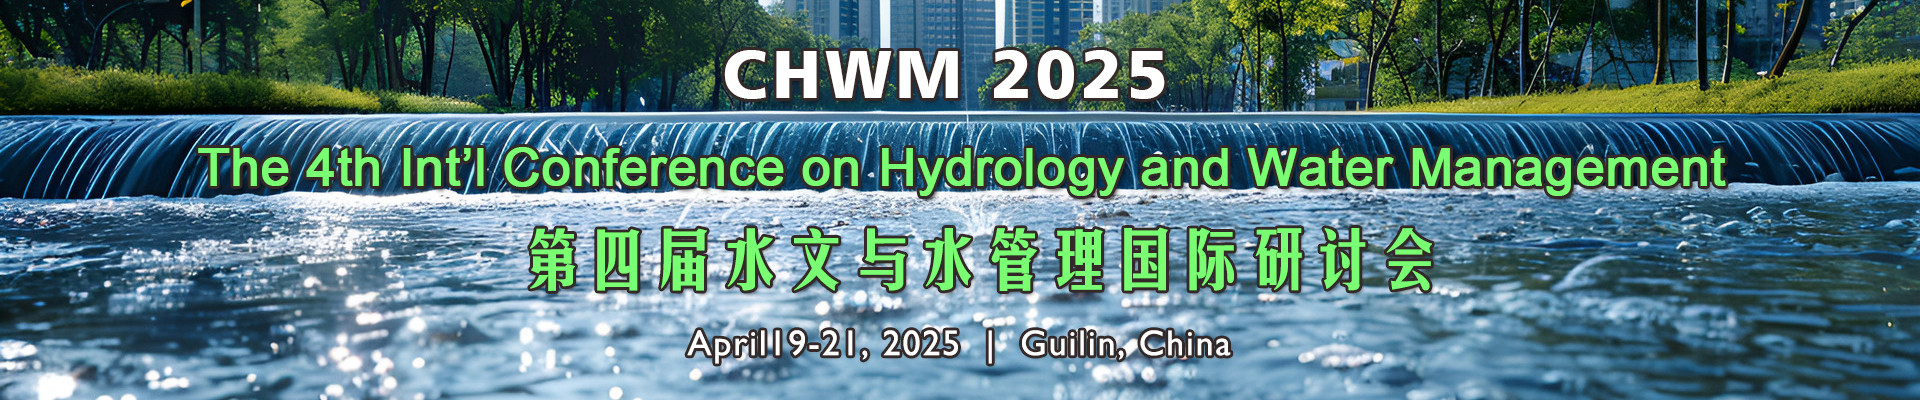 第四届水文与水管理国际研讨会(CHWM 2025)